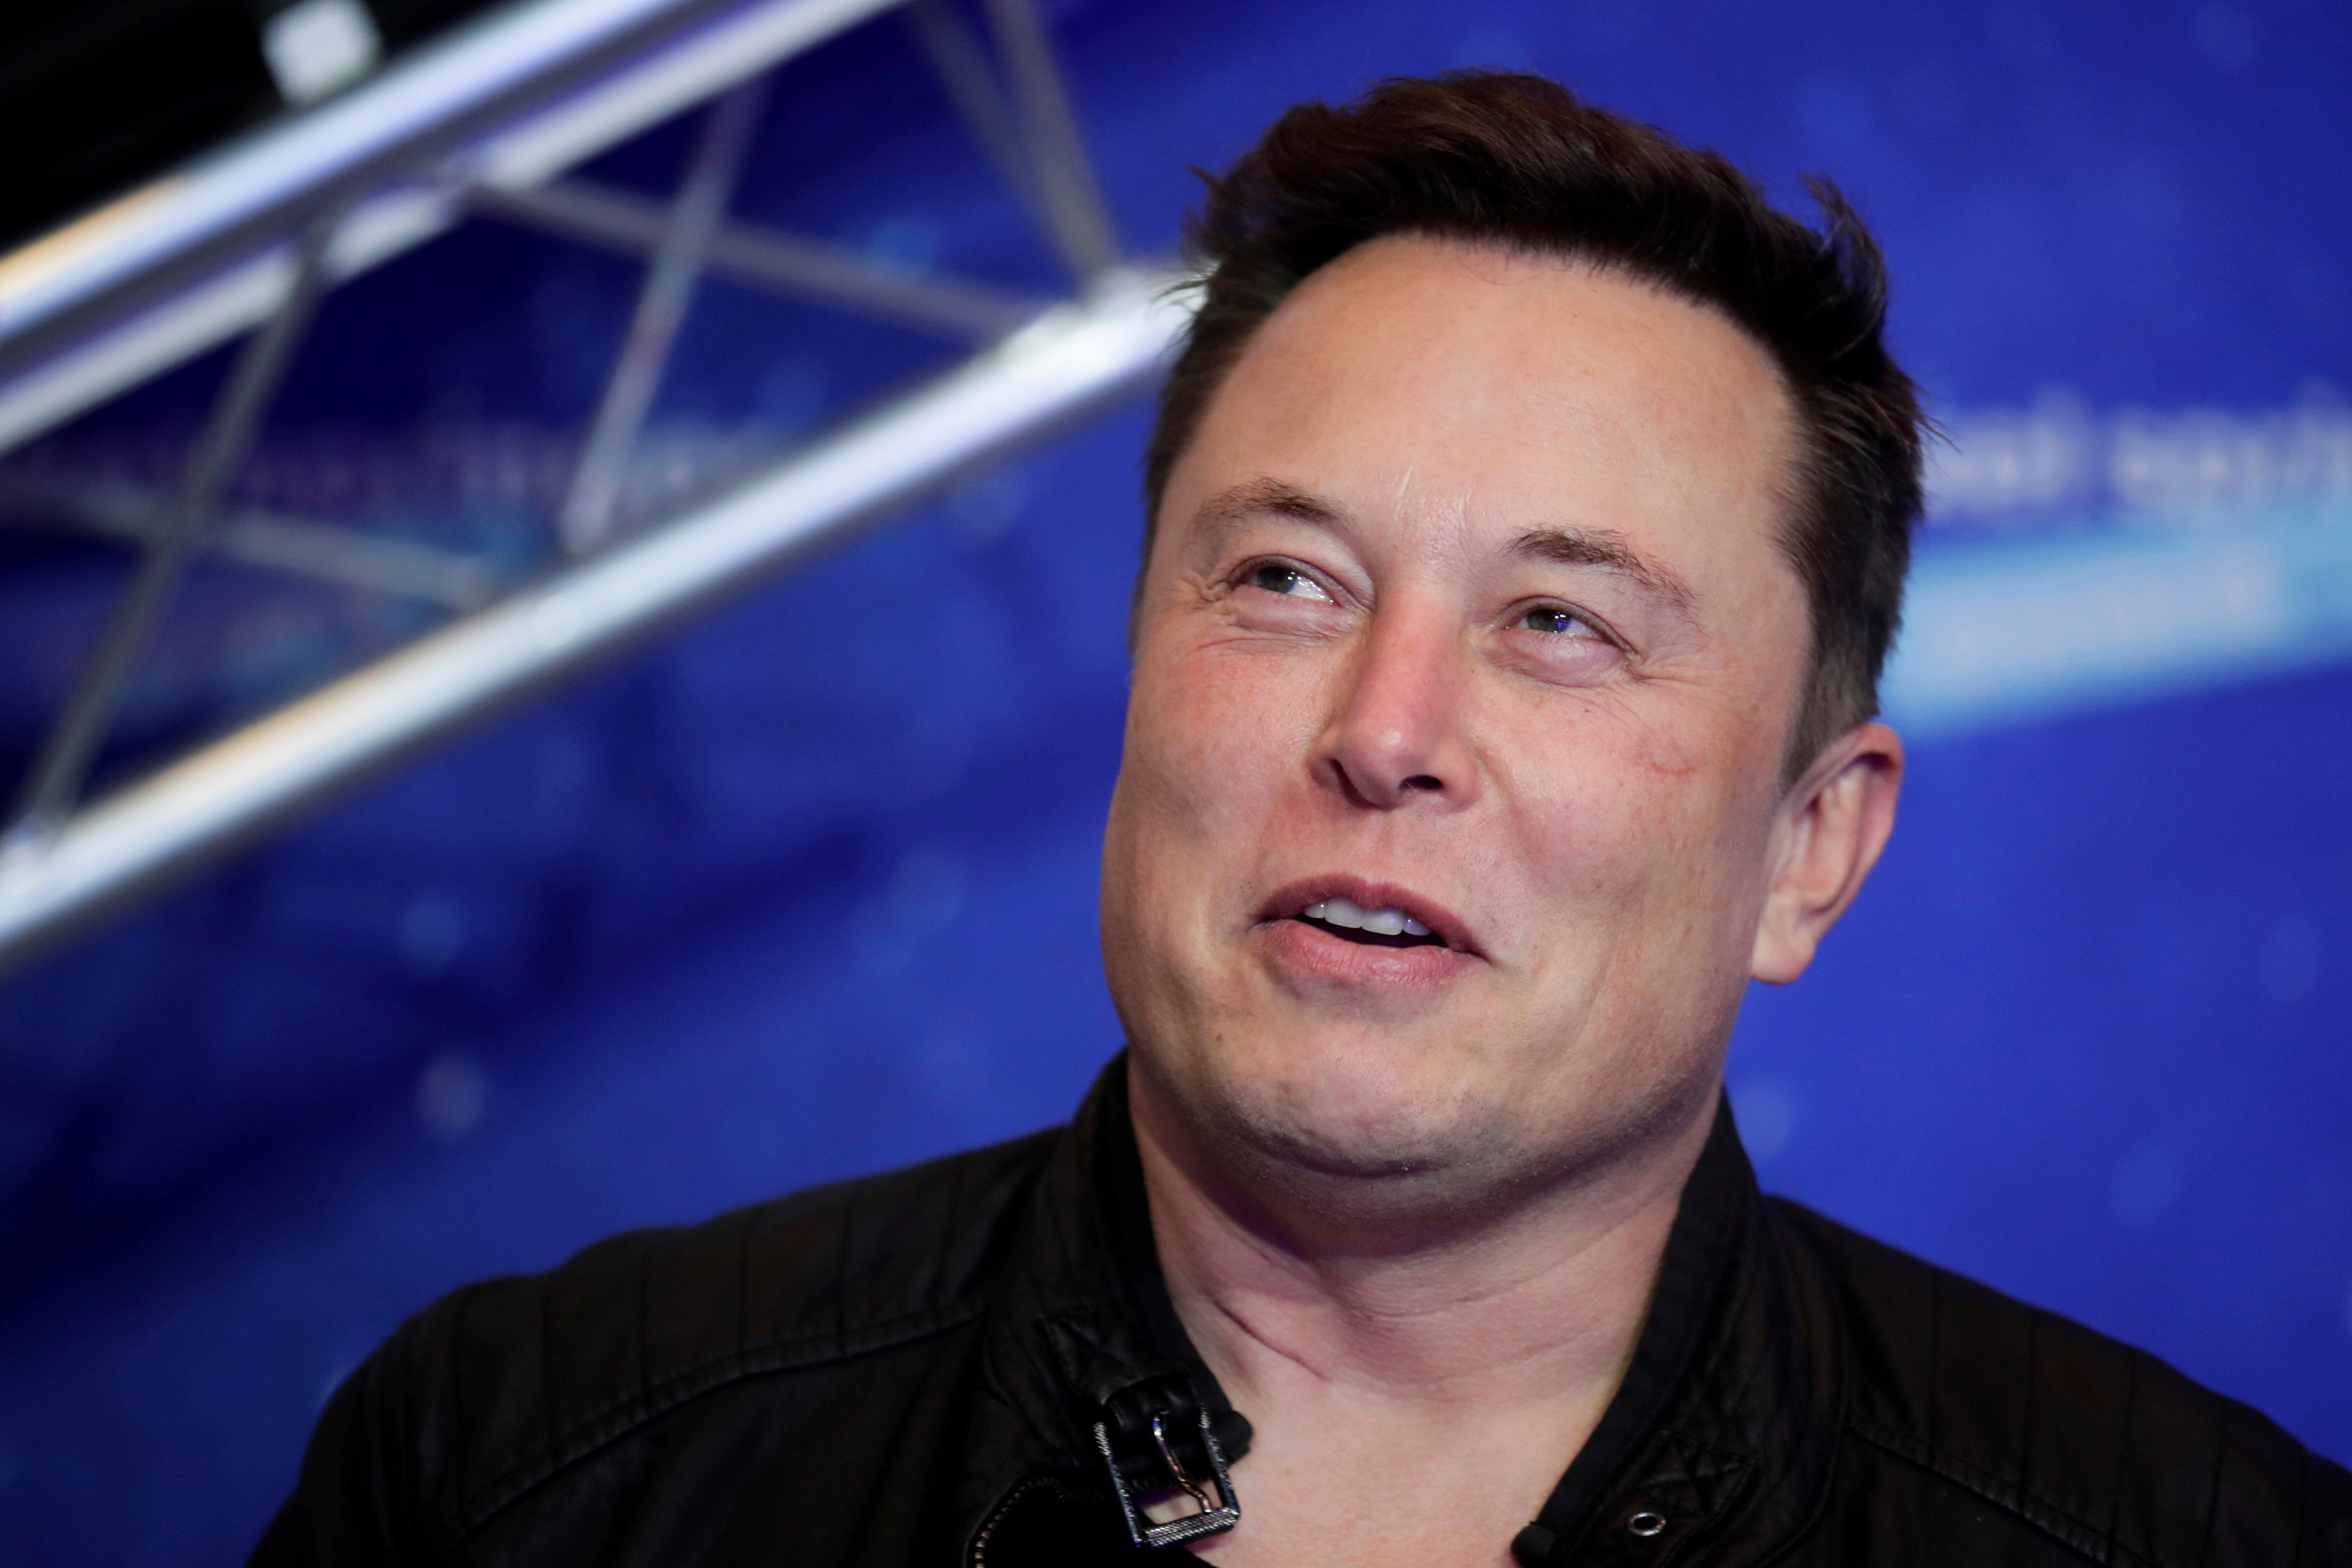 Elon Musk offered Twitter shareholders $54.20 per share